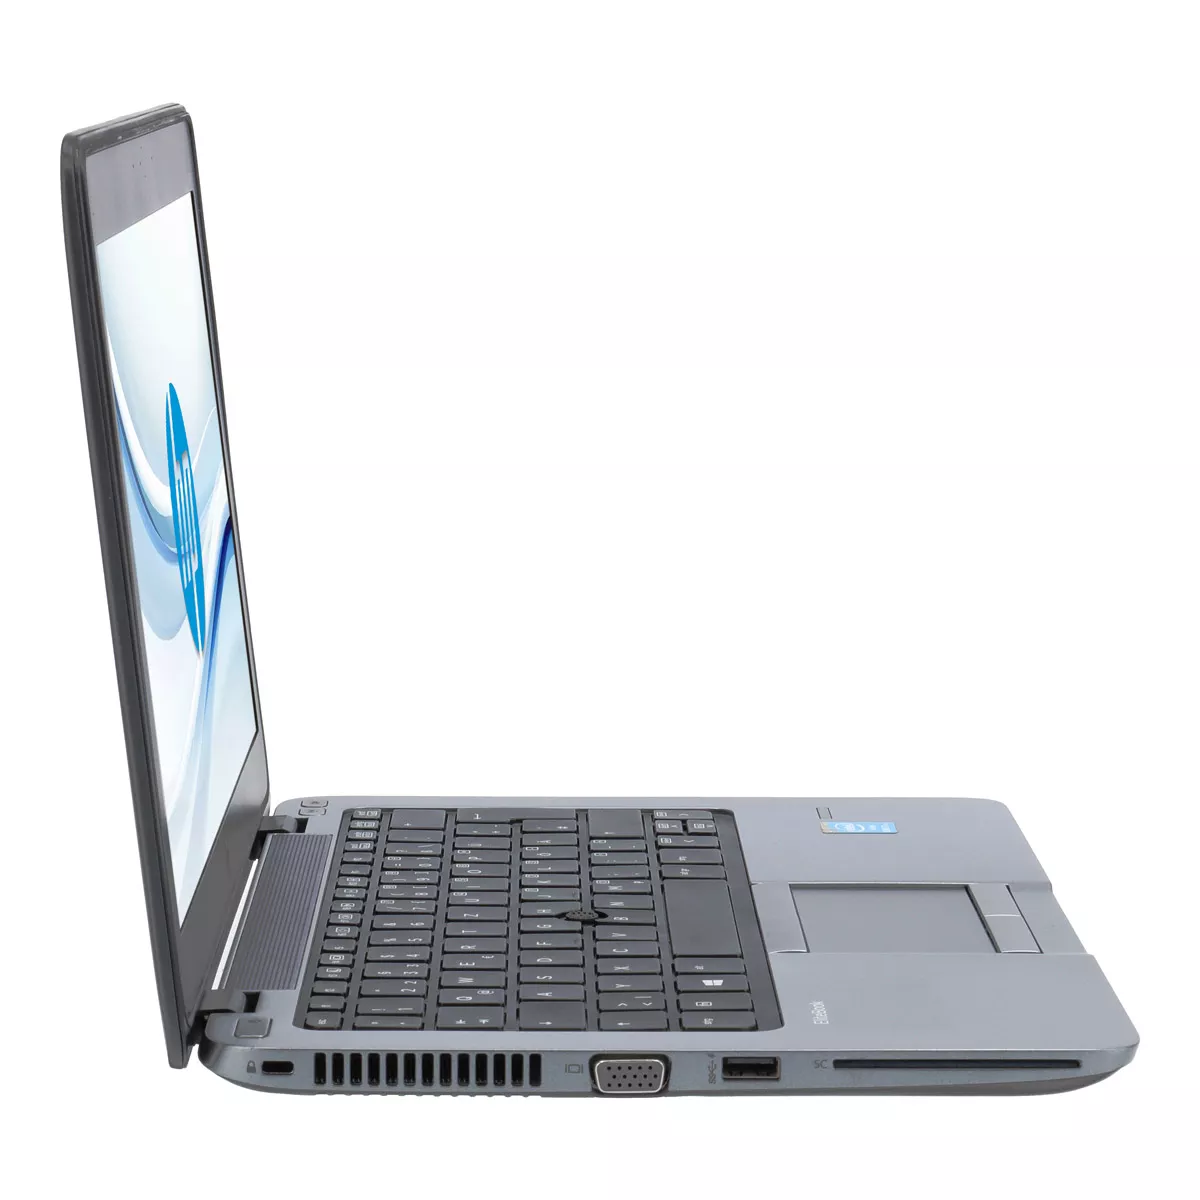 HP EliteBook 820 G2 Core i7 5600U 8 GB 240 GB SSD Webcam A